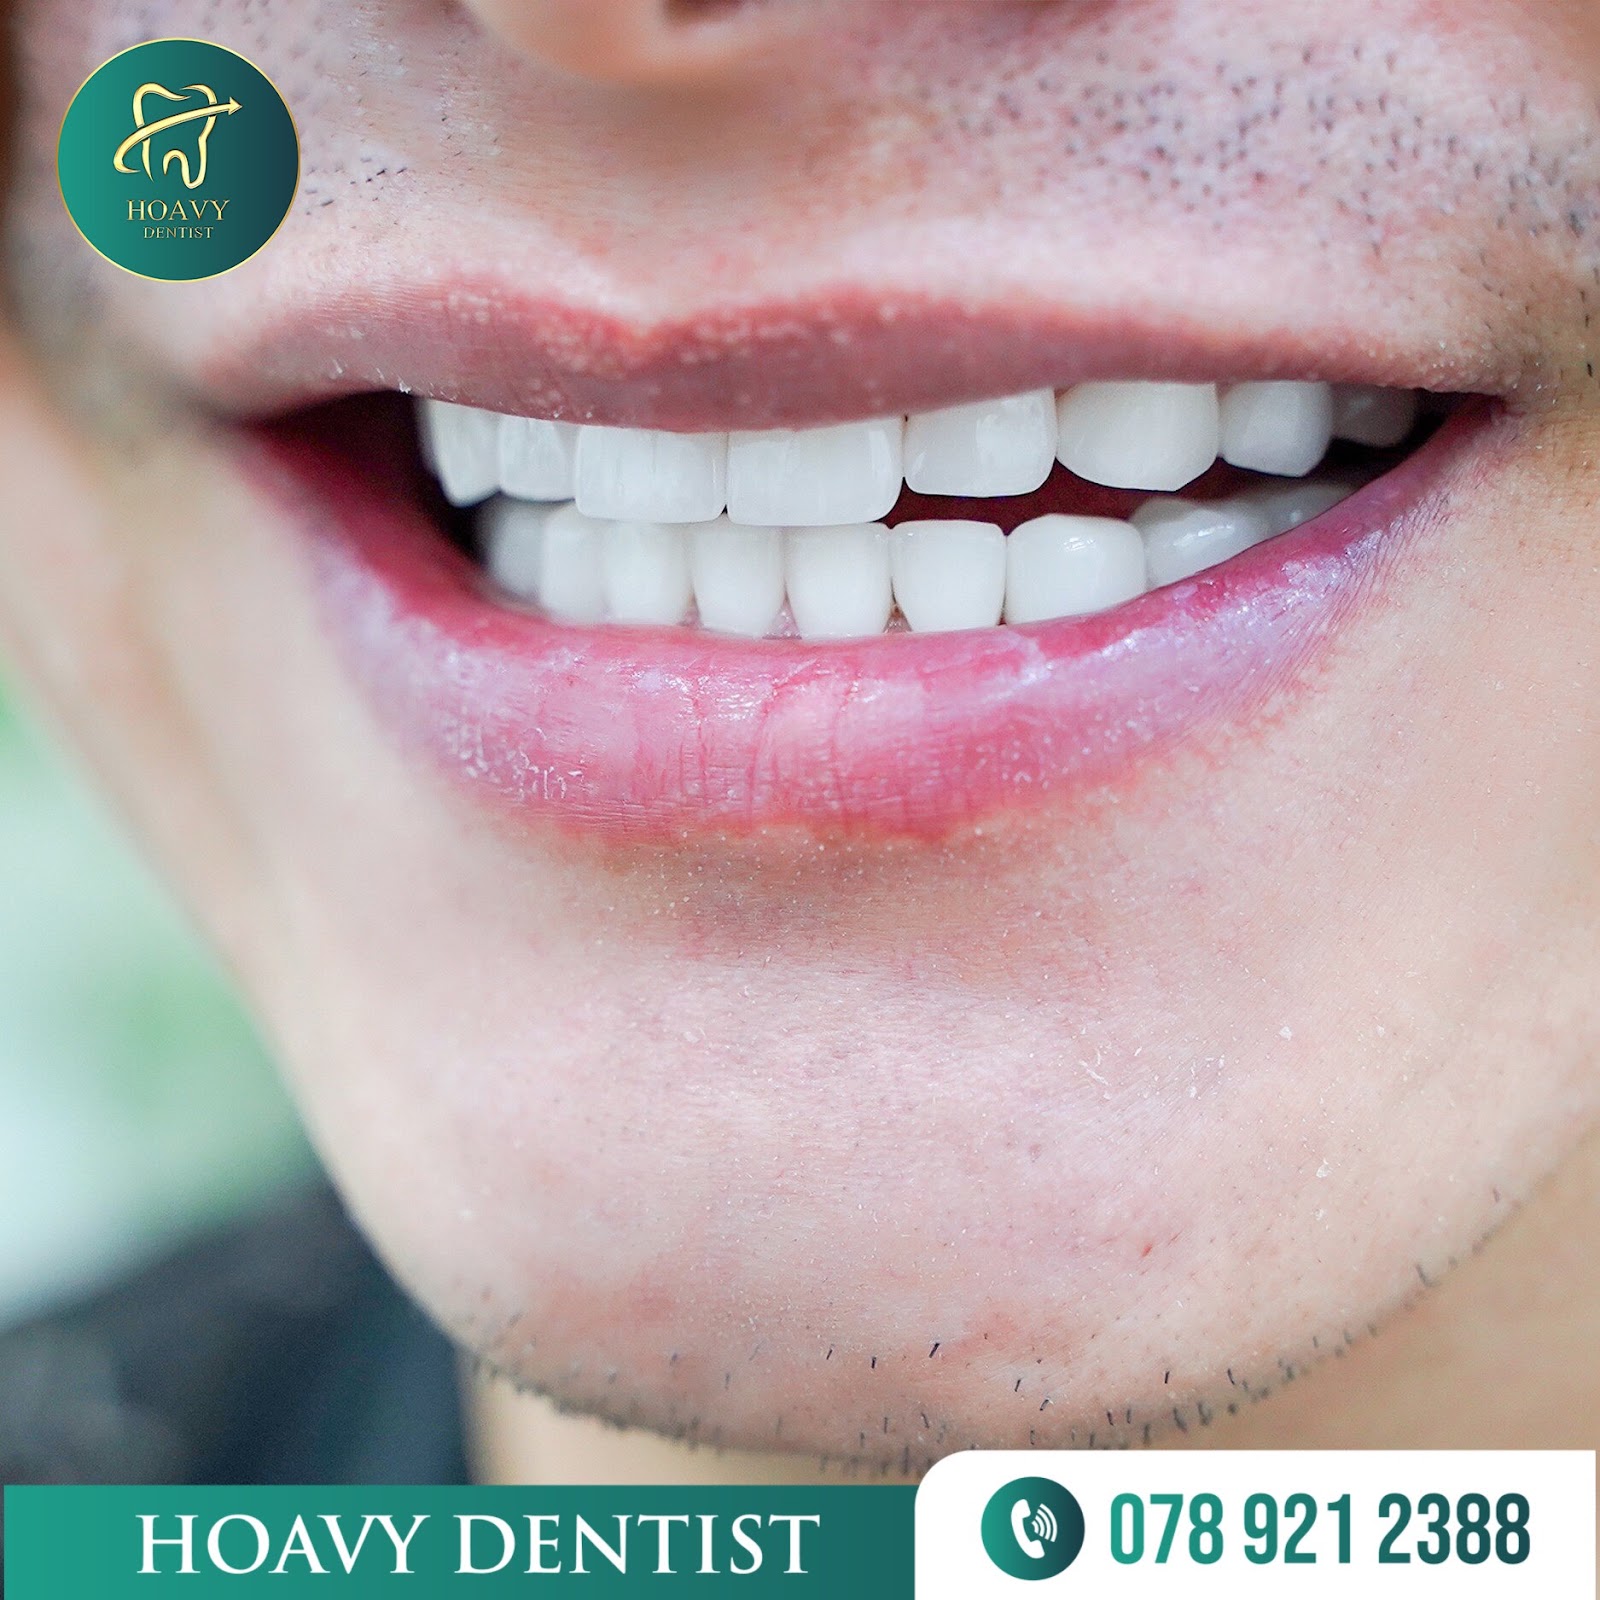 Hoavy Dentist có dịch vụ phục hình răng sứ cao cấp, bảo hành lâu dài